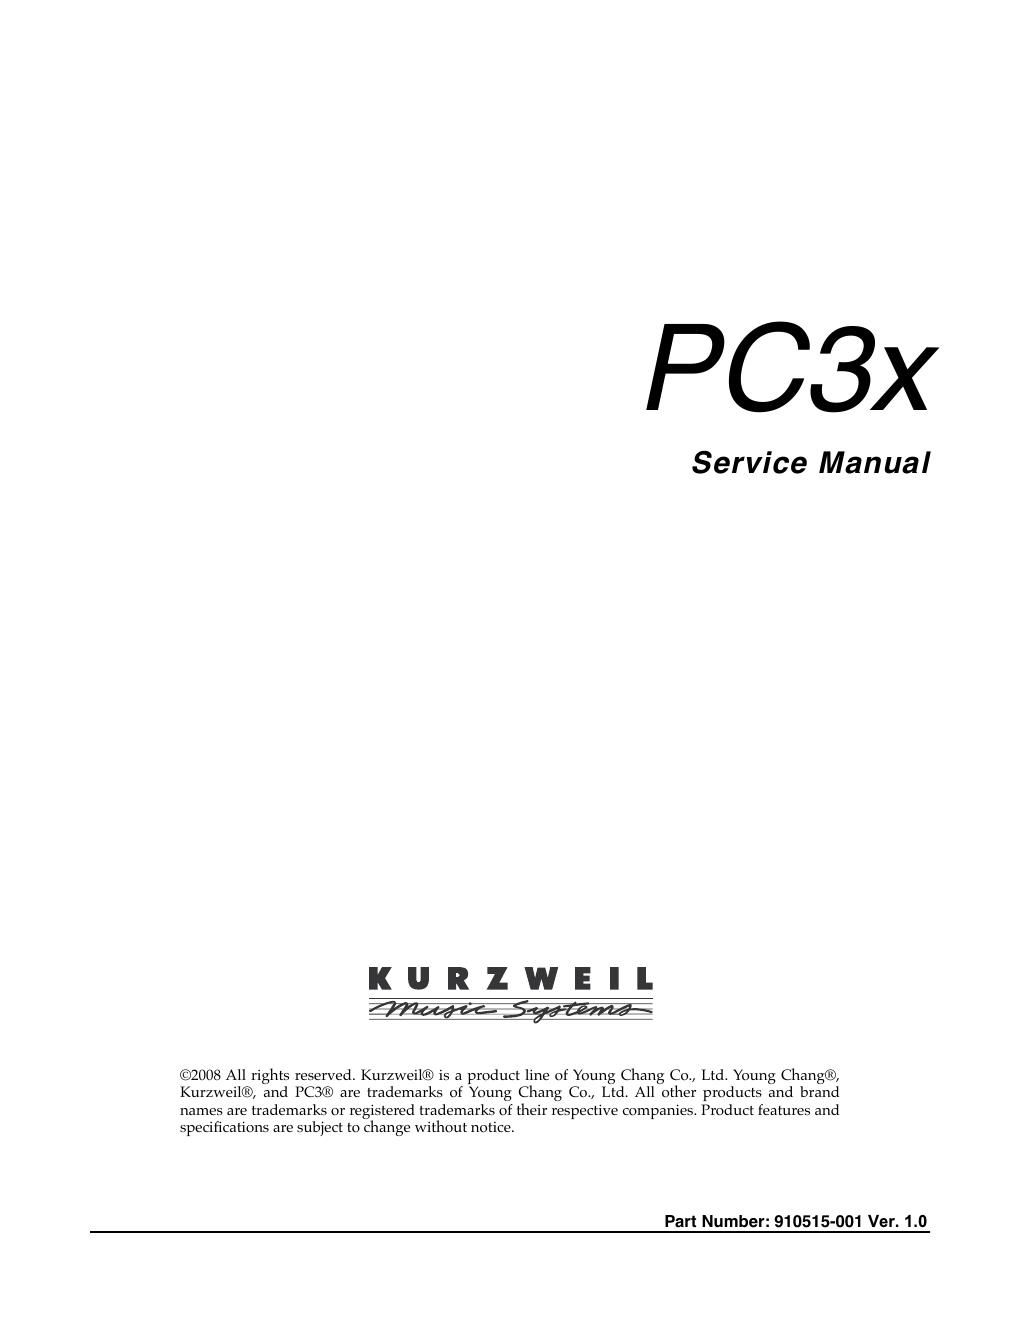 kurzweil pc3 x service manual